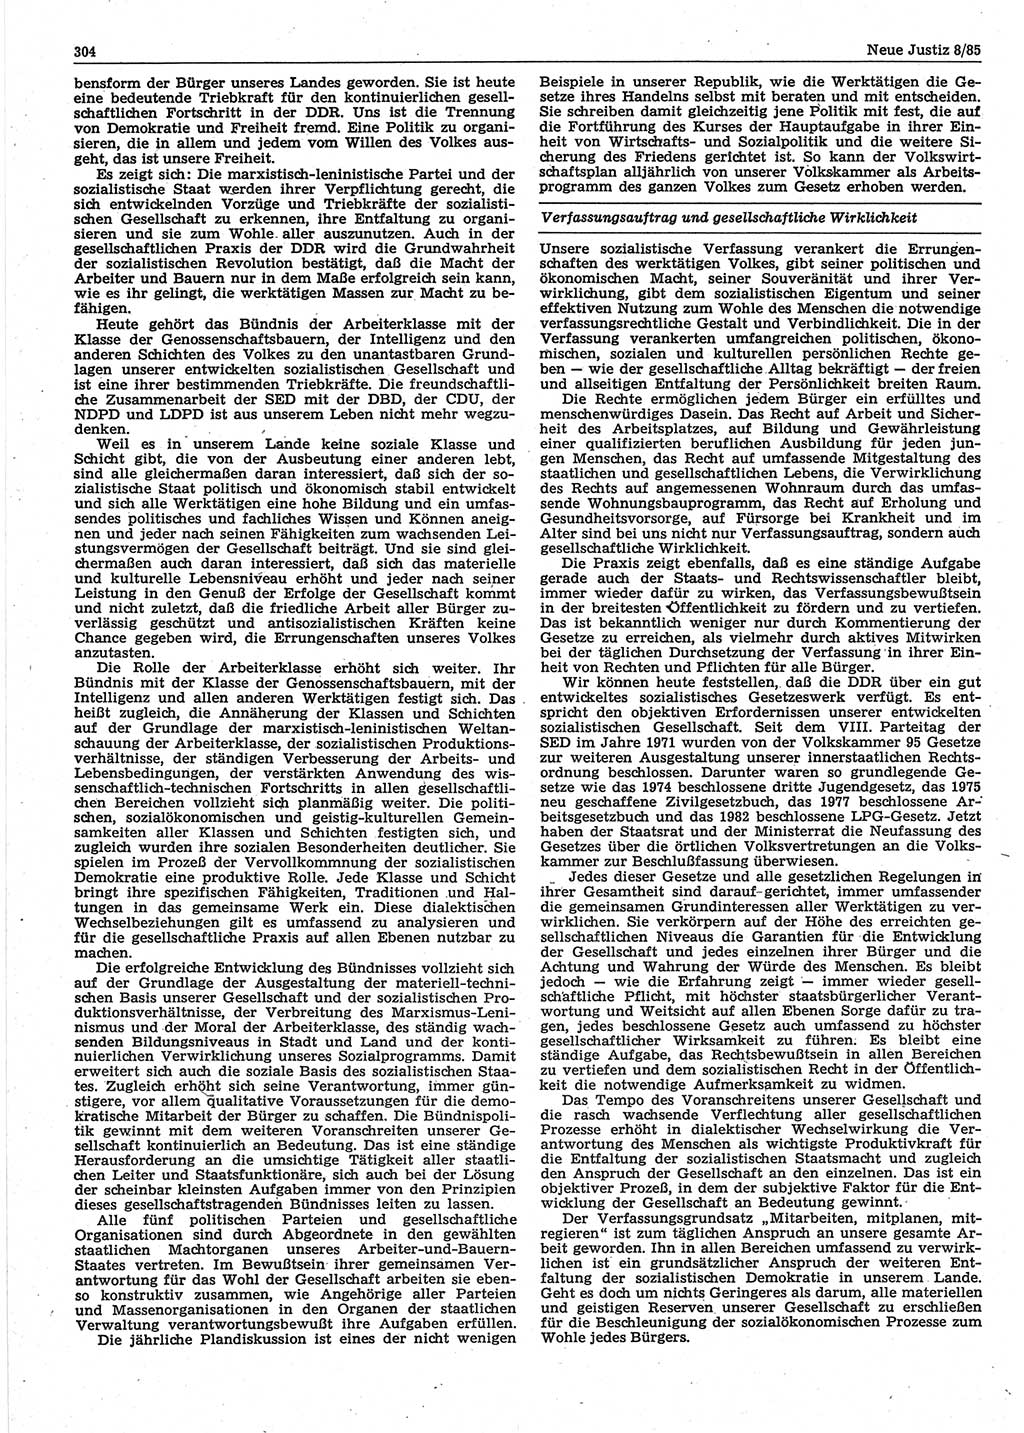 Neue Justiz (NJ), Zeitschrift für sozialistisches Recht und Gesetzlichkeit [Deutsche Demokratische Republik (DDR)], 39. Jahrgang 1985, Seite 304 (NJ DDR 1985, S. 304)